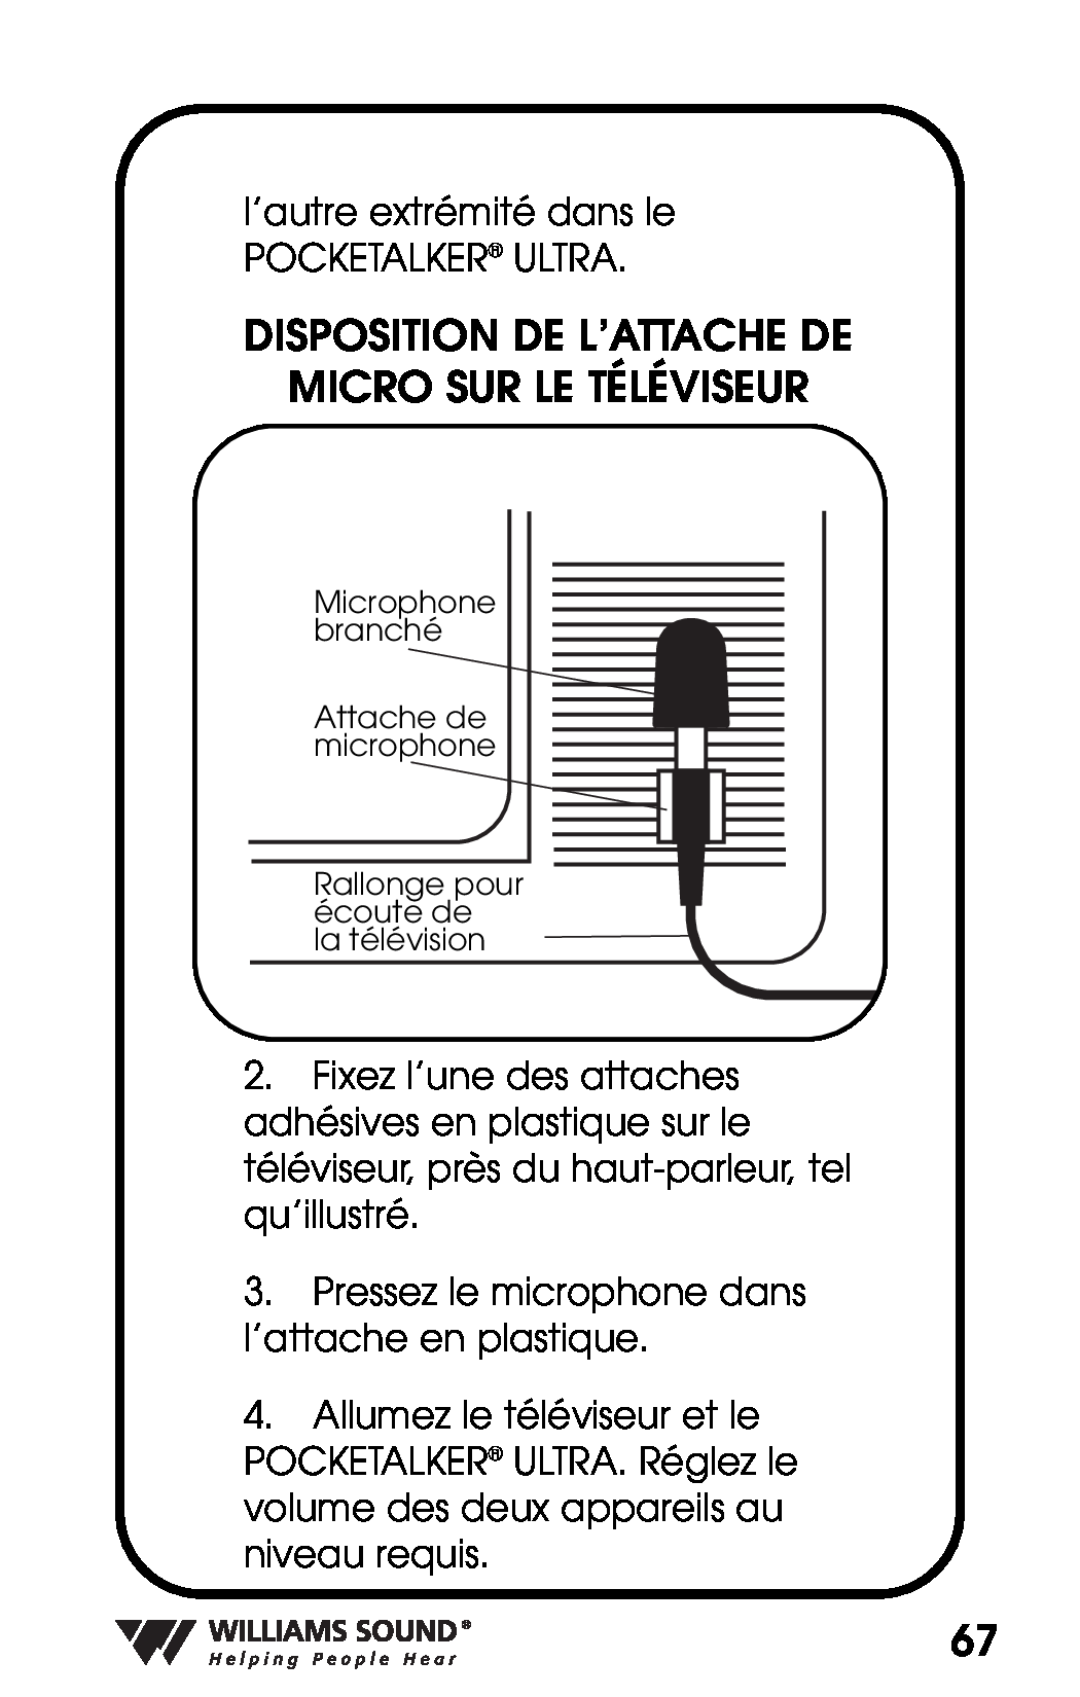 Williams Sound PKT D1 manual Disposition De L’Attache De, Micro Sur Le Téléviseur 